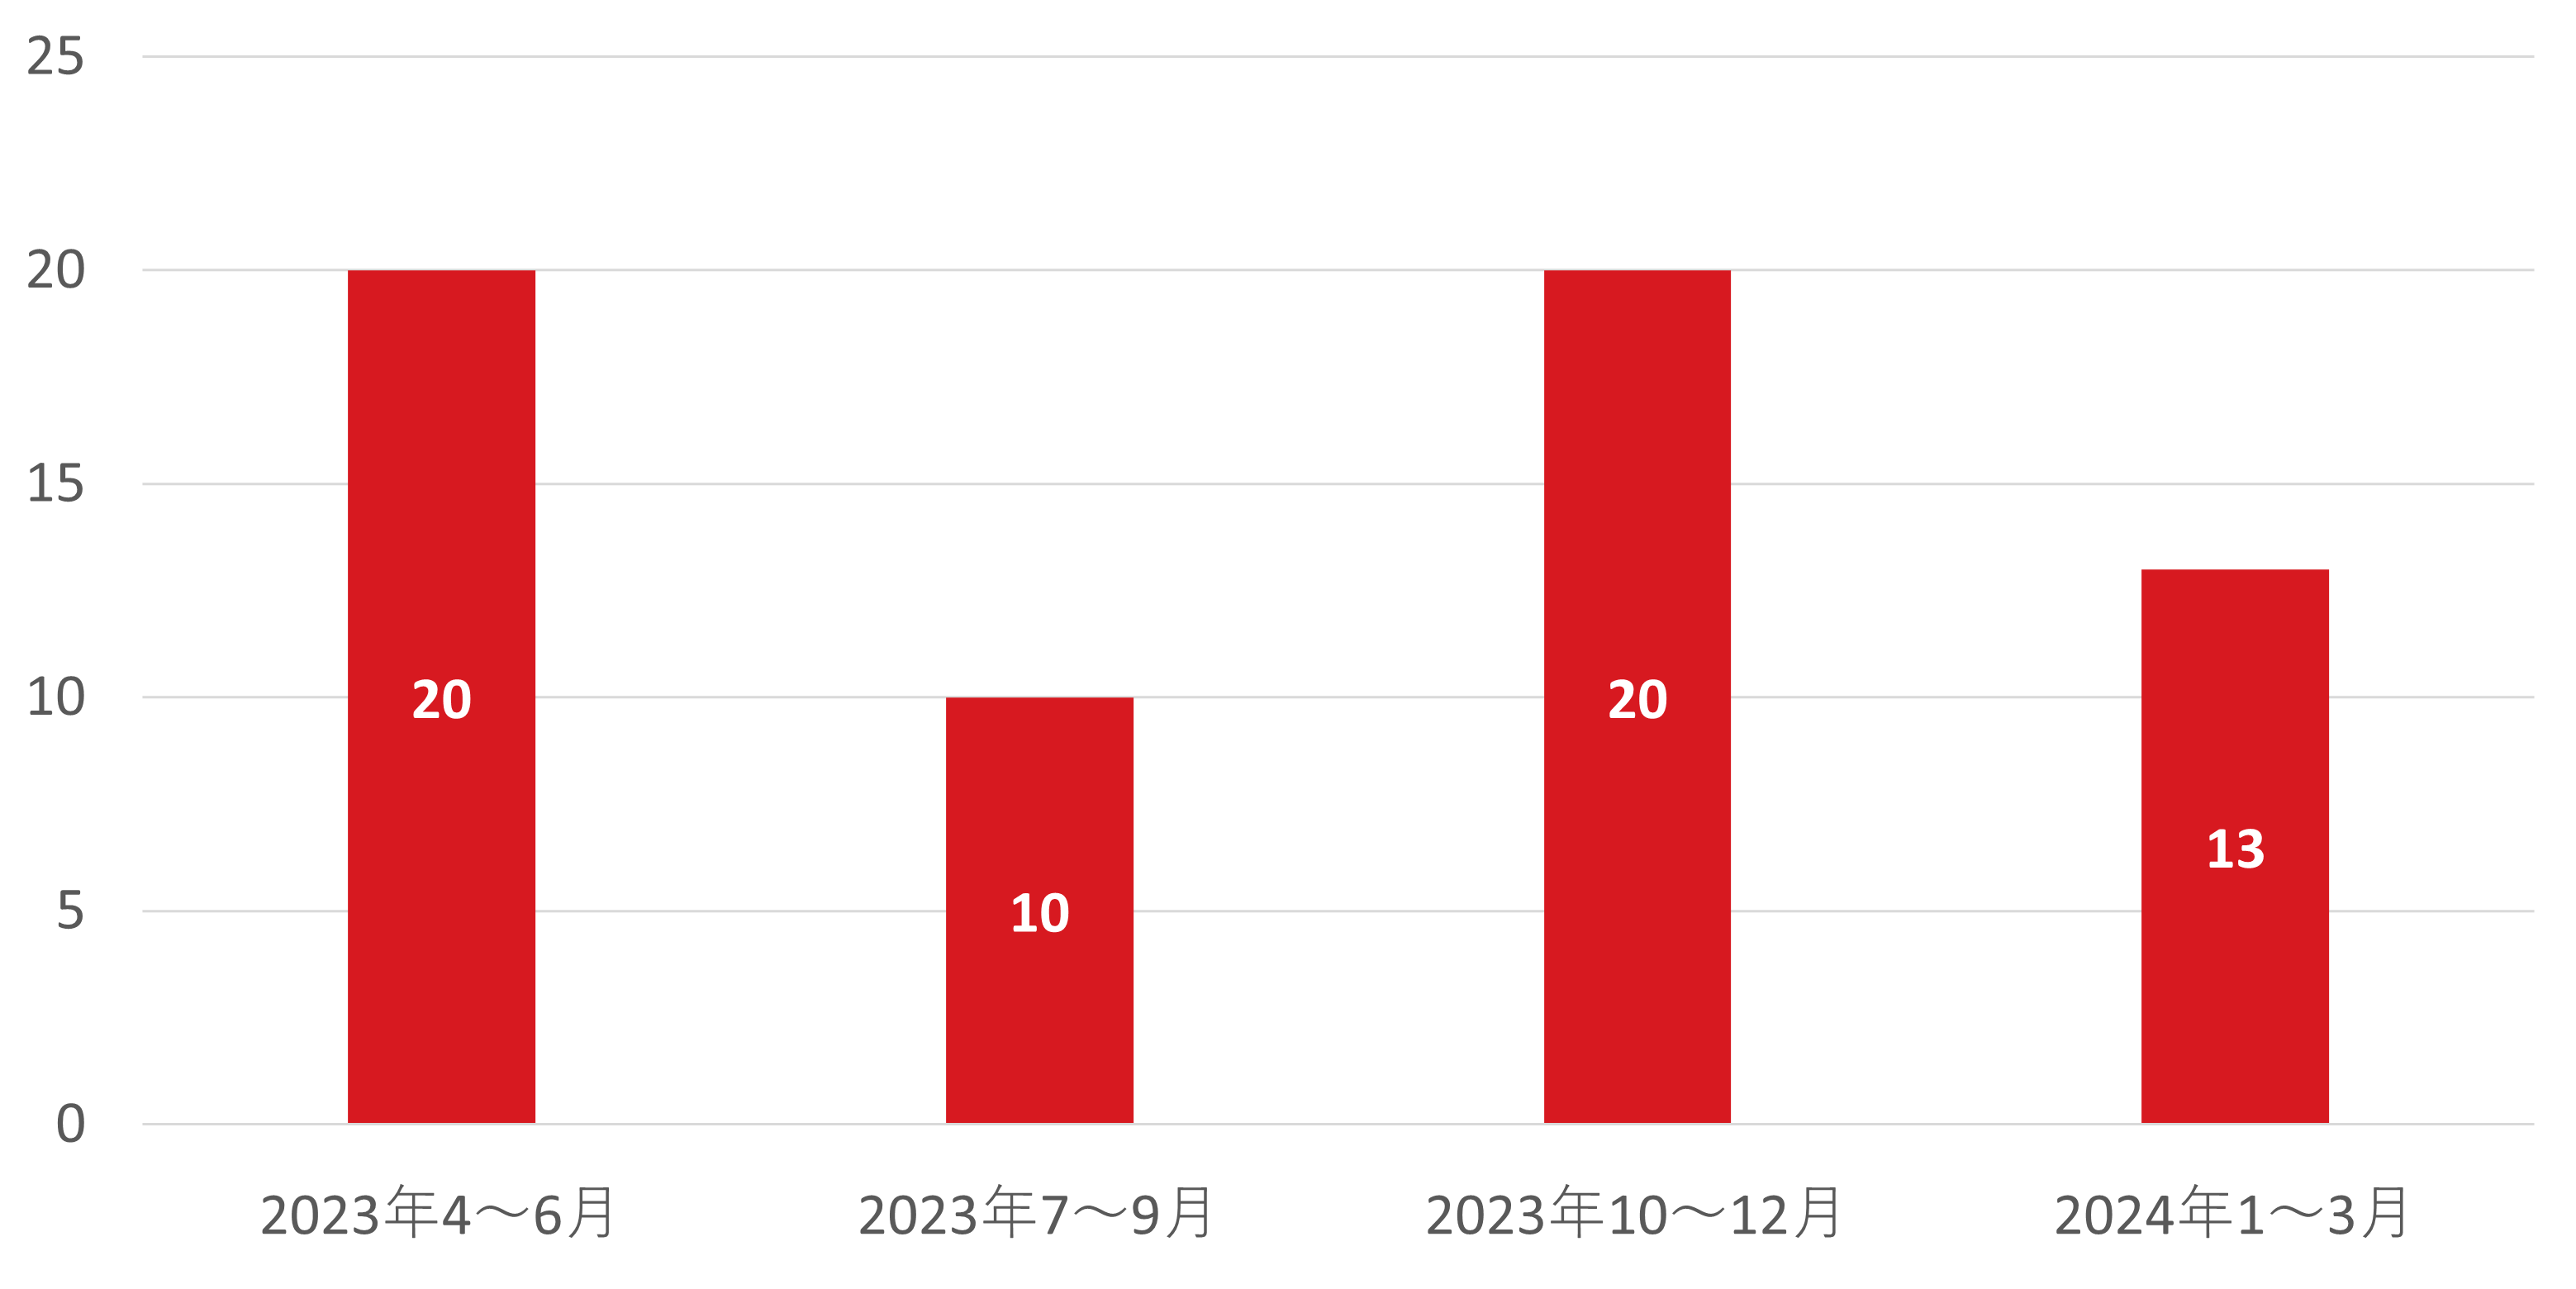 図：国内組織におけるランサムウェア被害公表件数の推移 2023年第2四半期～2024年第1四半期